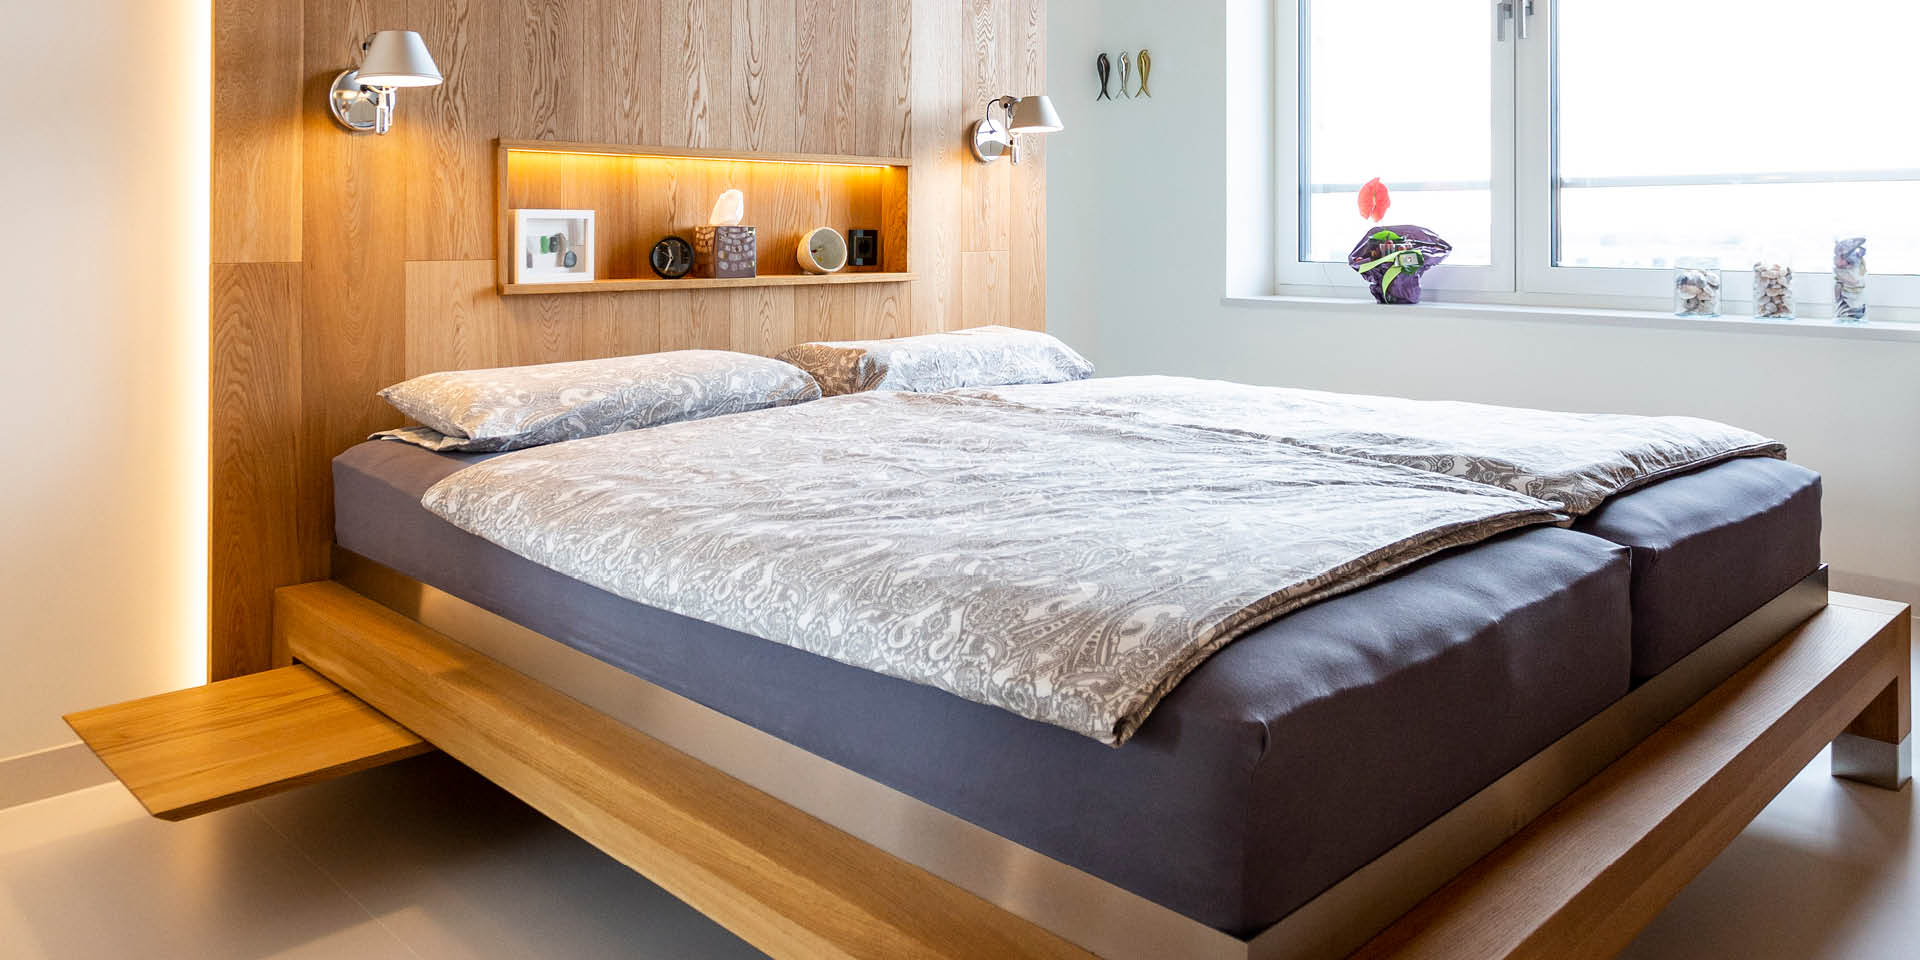 individuelles Schlafzimmer von der Möbeltischlerei woodendesign aus Hamburg